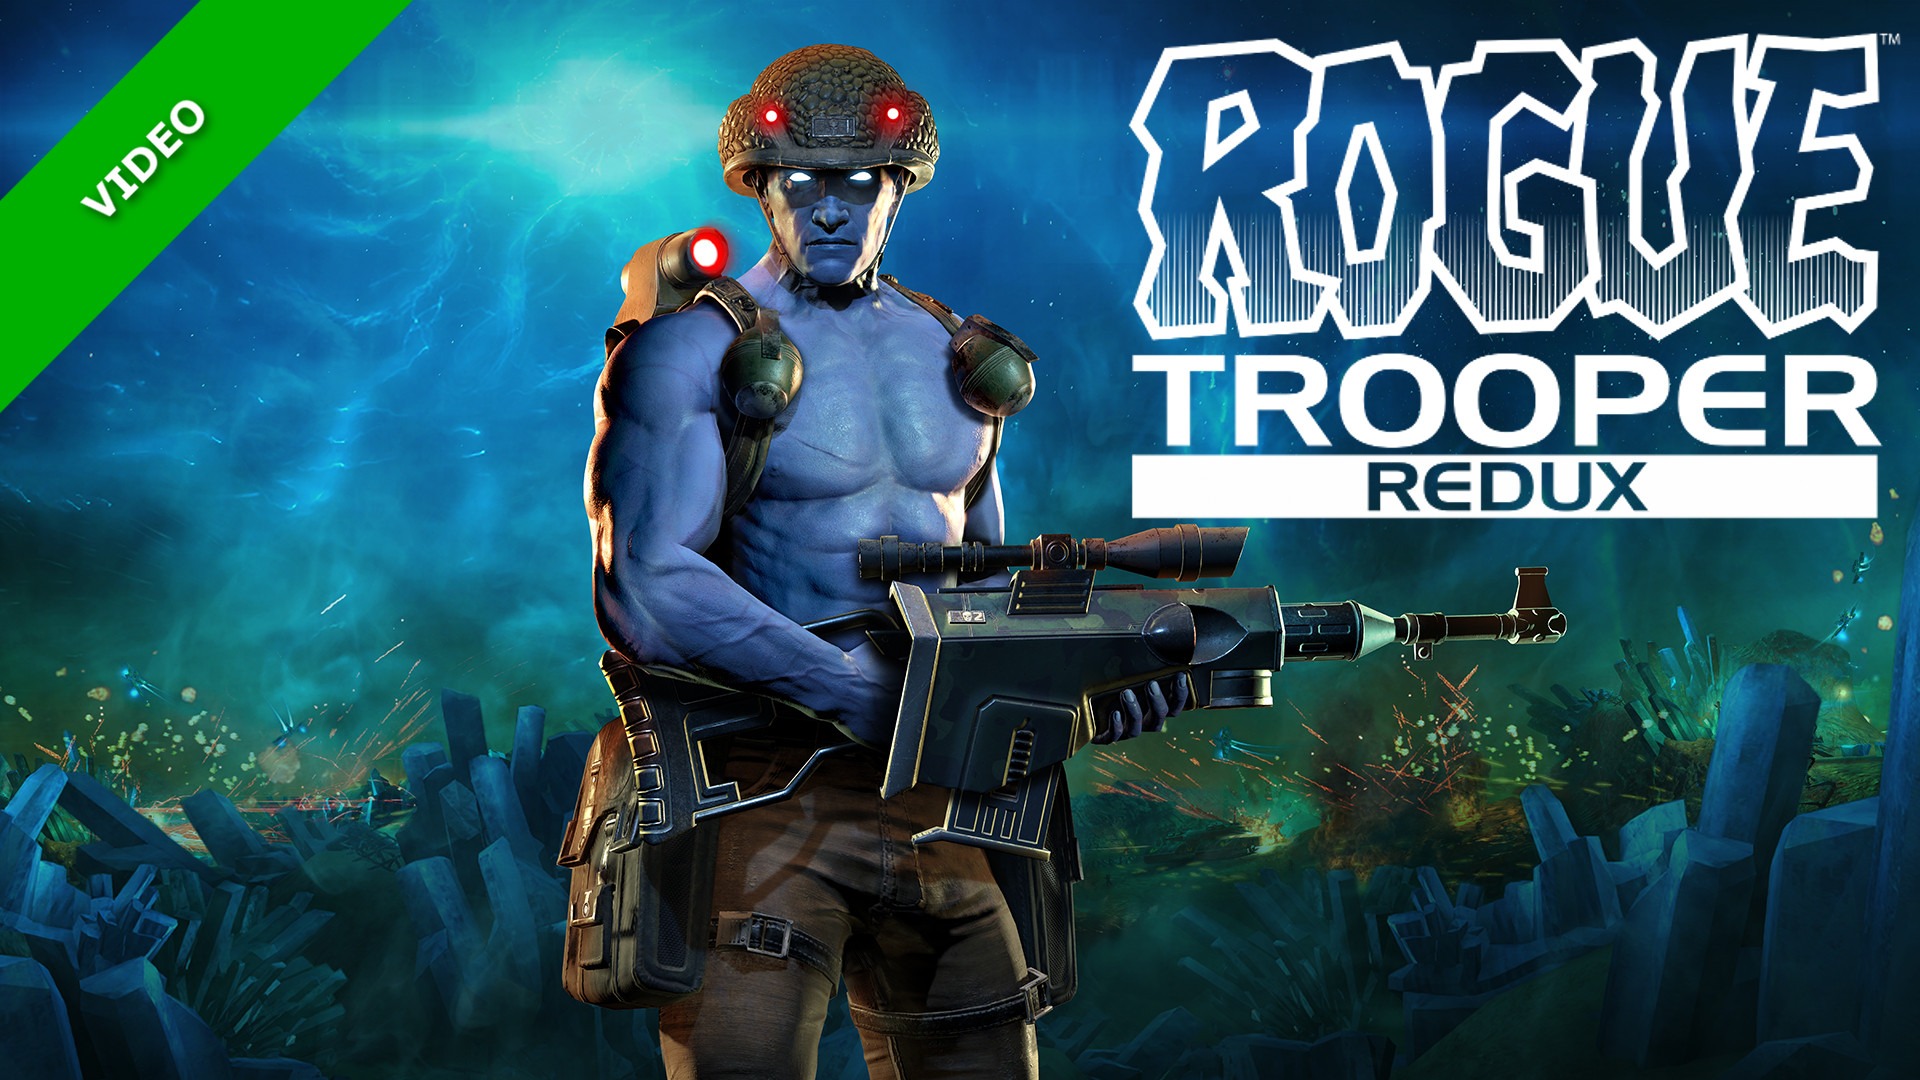 Rogue trooper redux. Rogue Trooper (игра, 2006). Rogue Trooper ps2. Rogue Trooper обложка. Rogue Trooper Redux Gunnar.